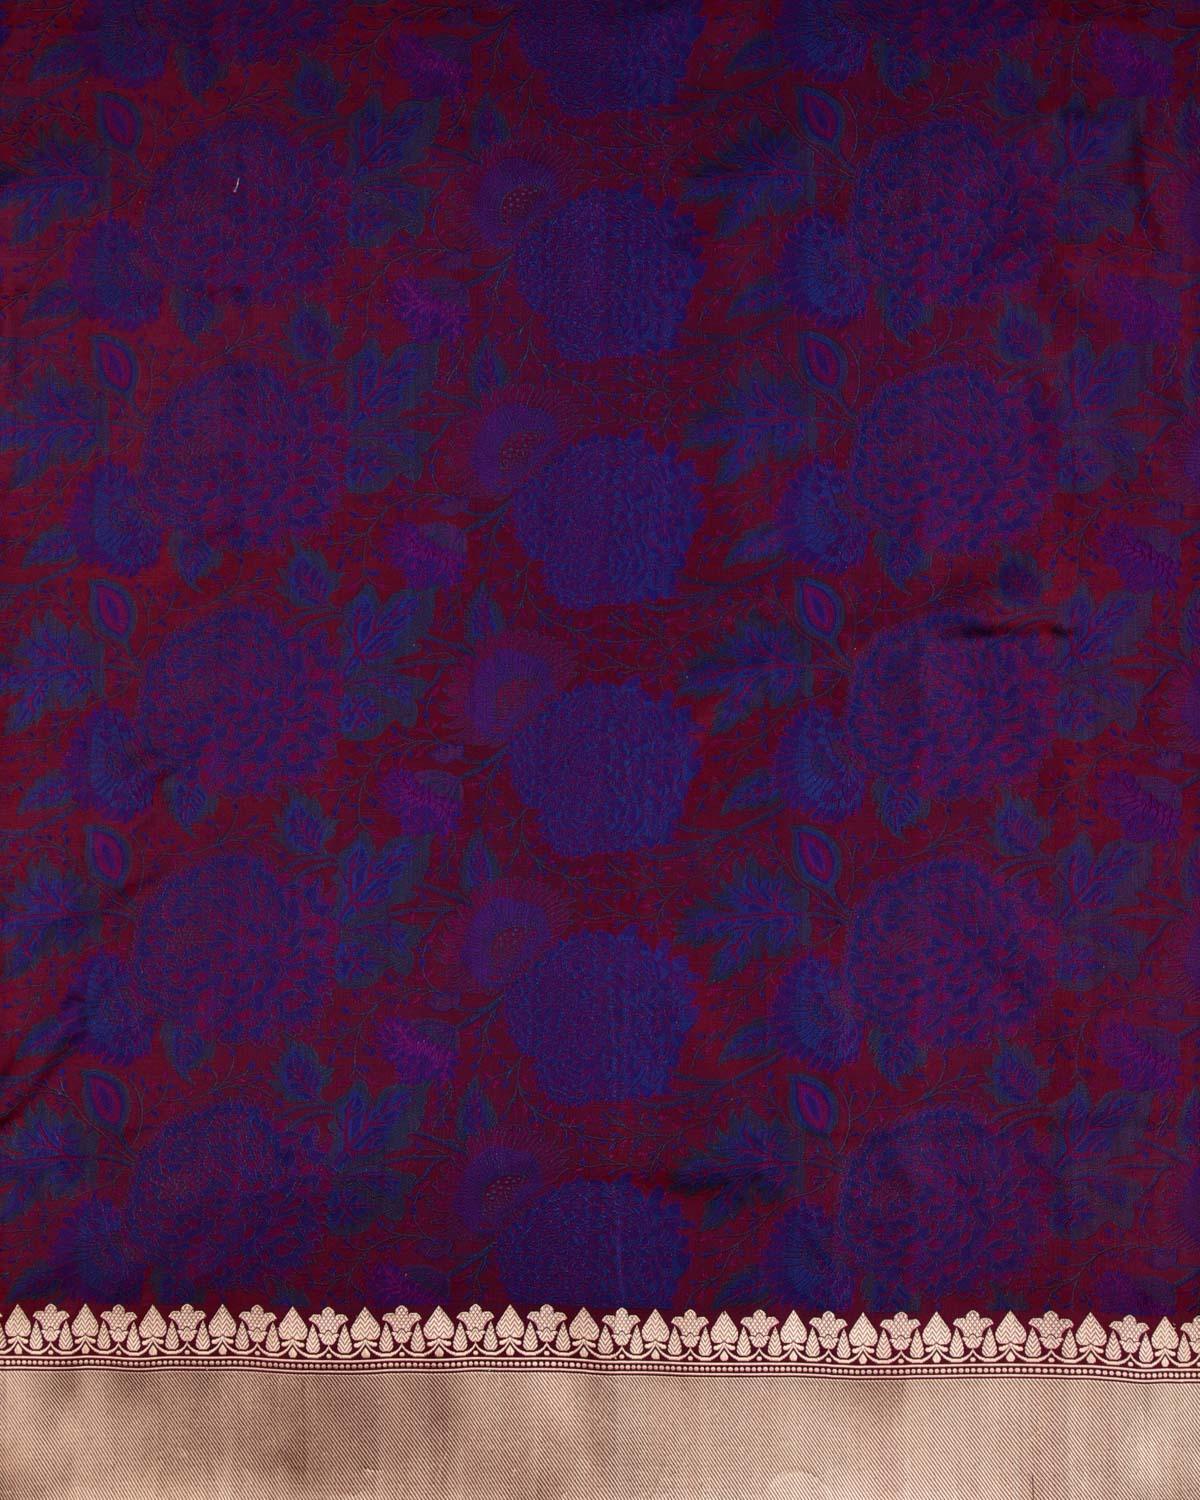 Blue On Maroon Banarasi Resham Tehri Tanchoi Brocade Handwoven Katan Silk Saree - By HolyWeaves, Benares